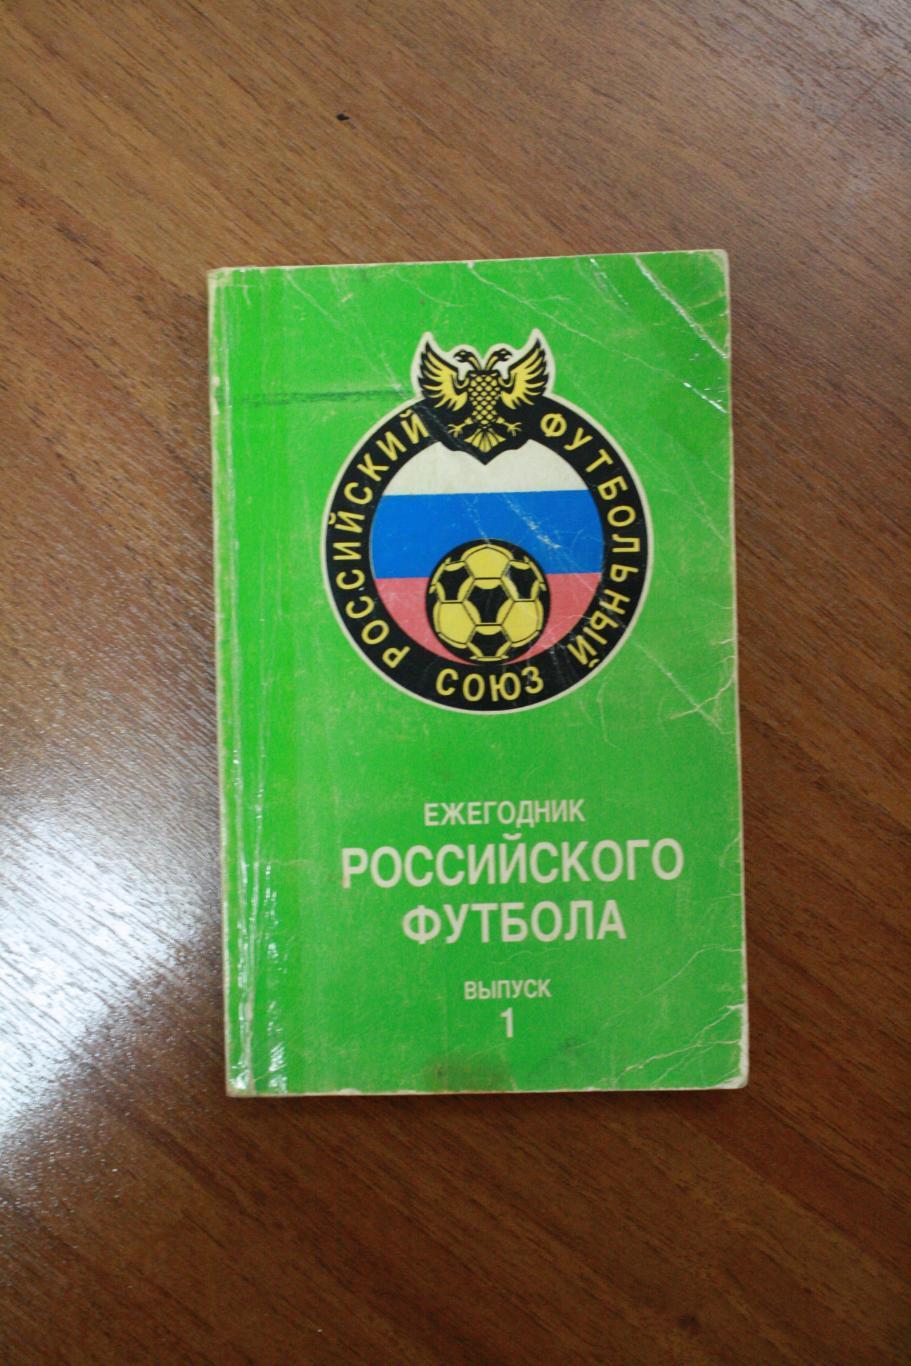 Ежегодник Российского футбола - 1 выпуск